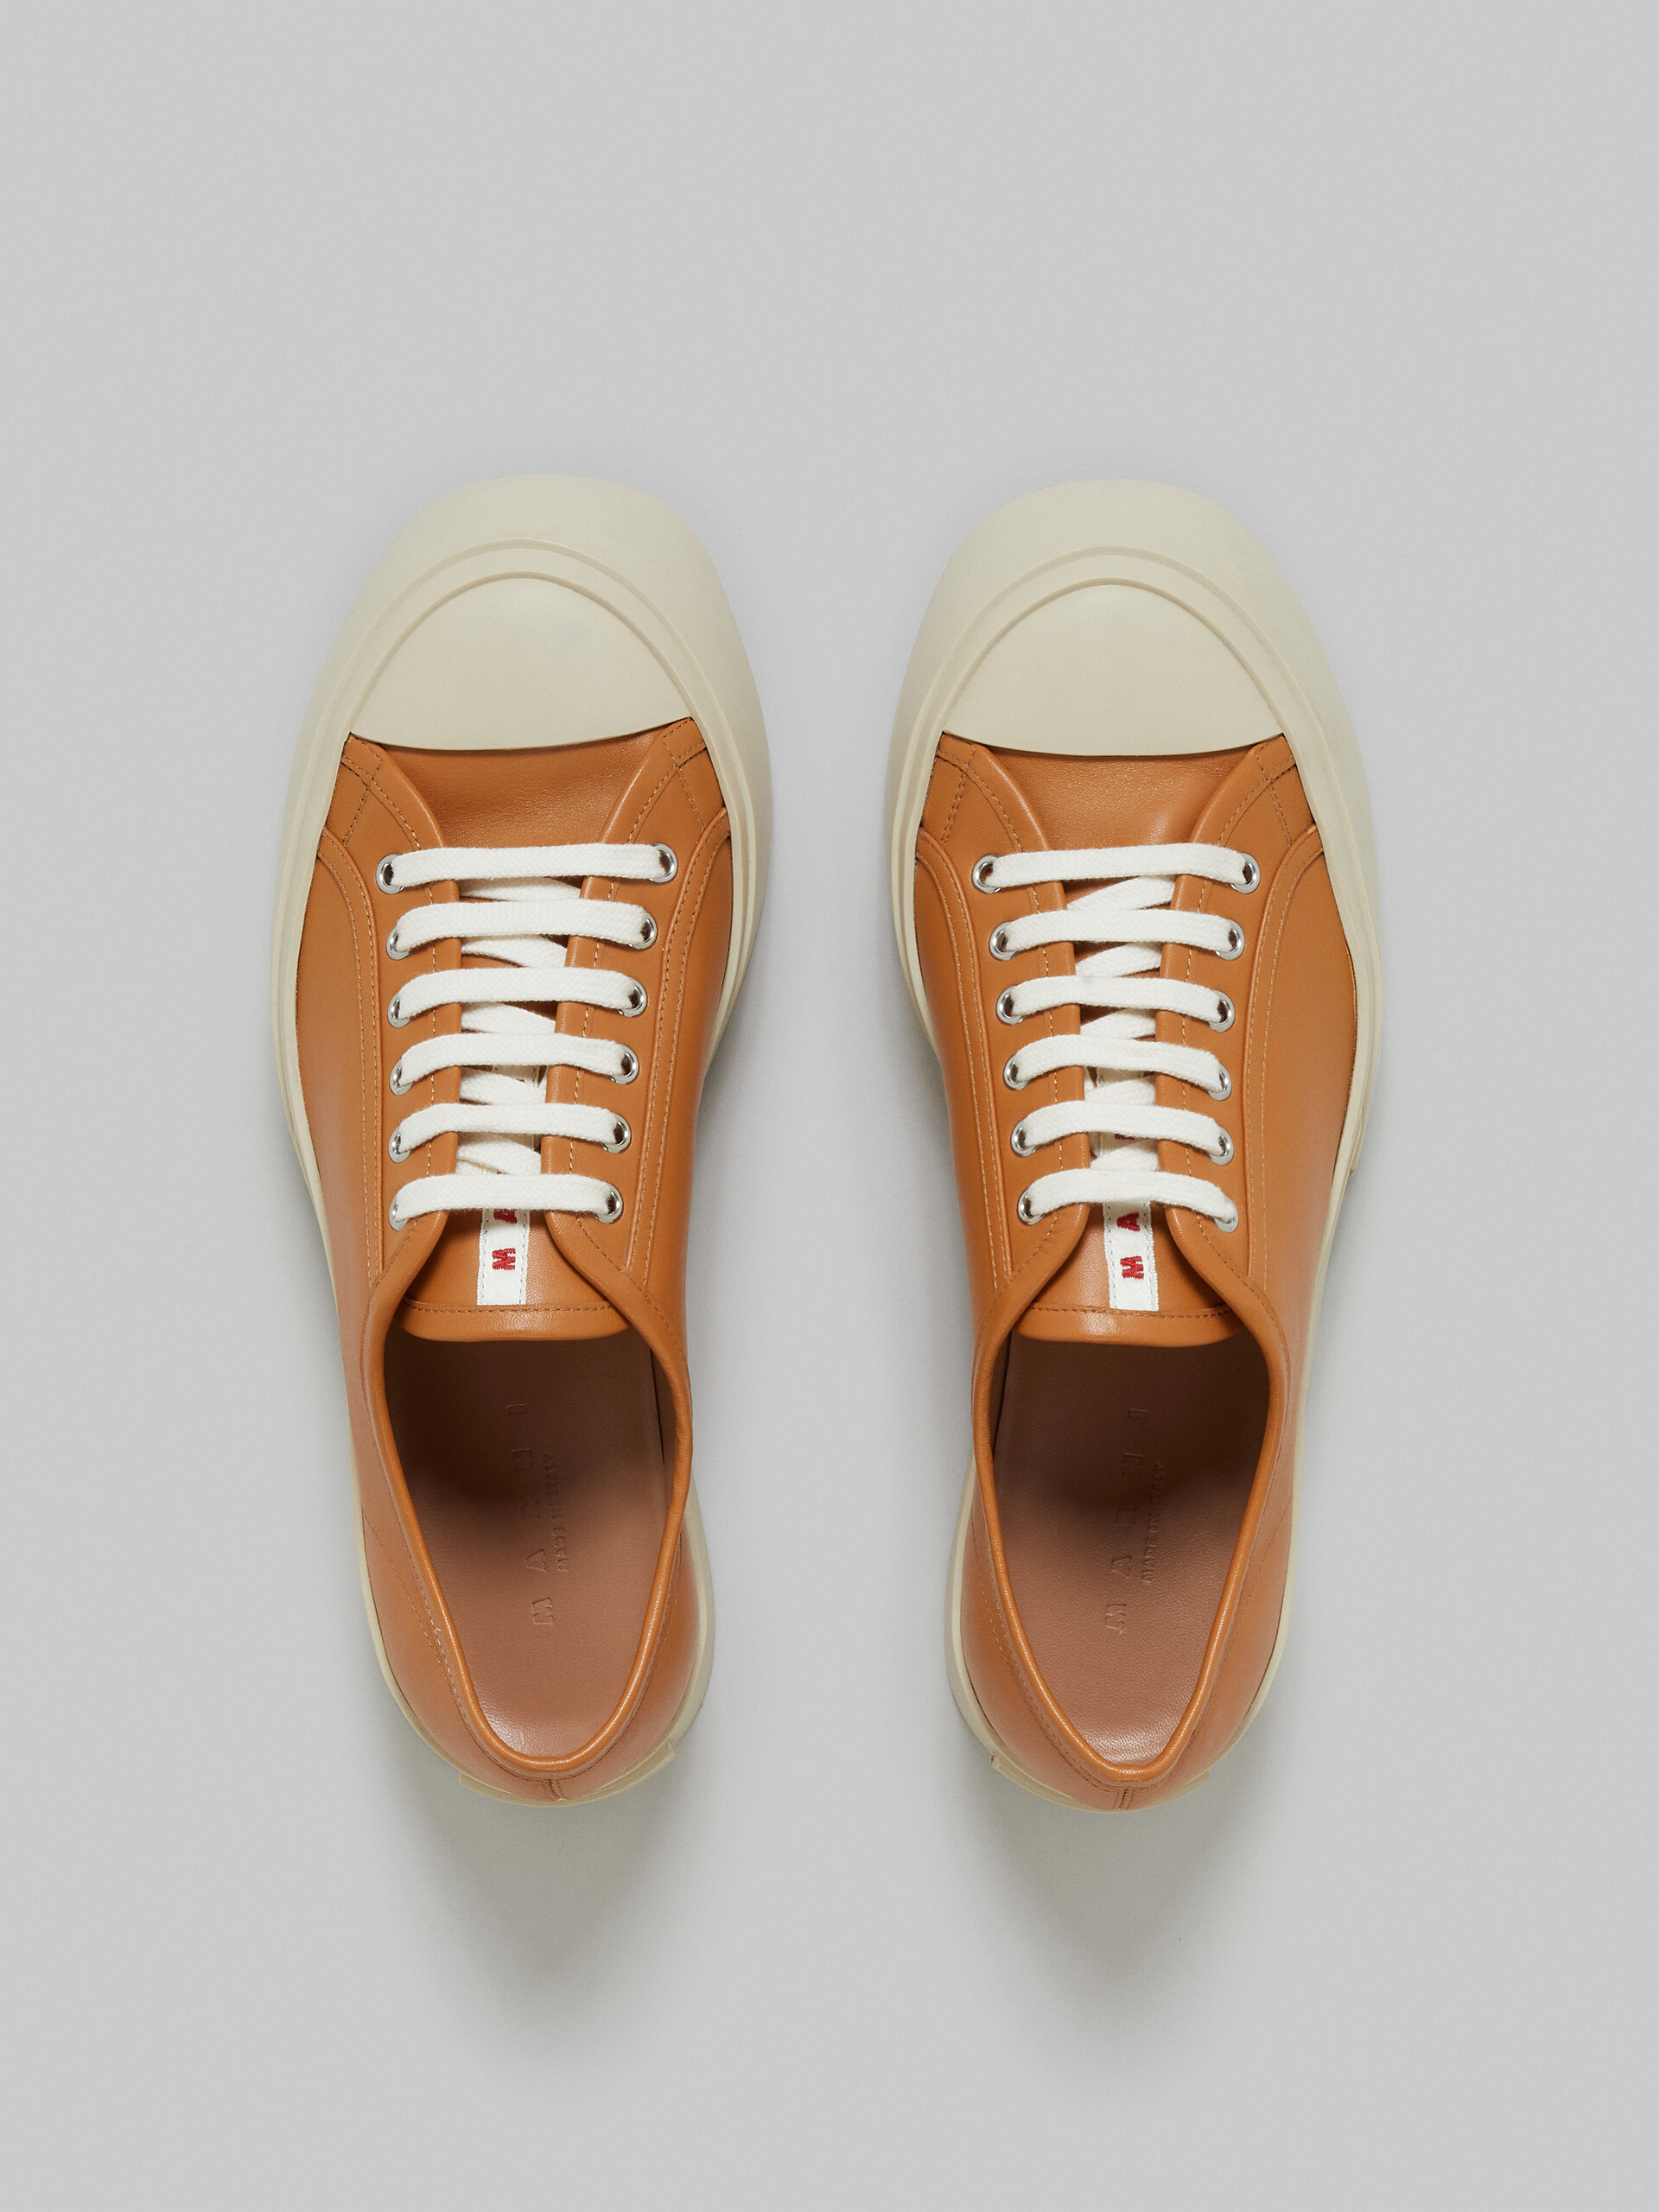 Zapatilla Pablo de napa marrón - Sneakers - Image 4